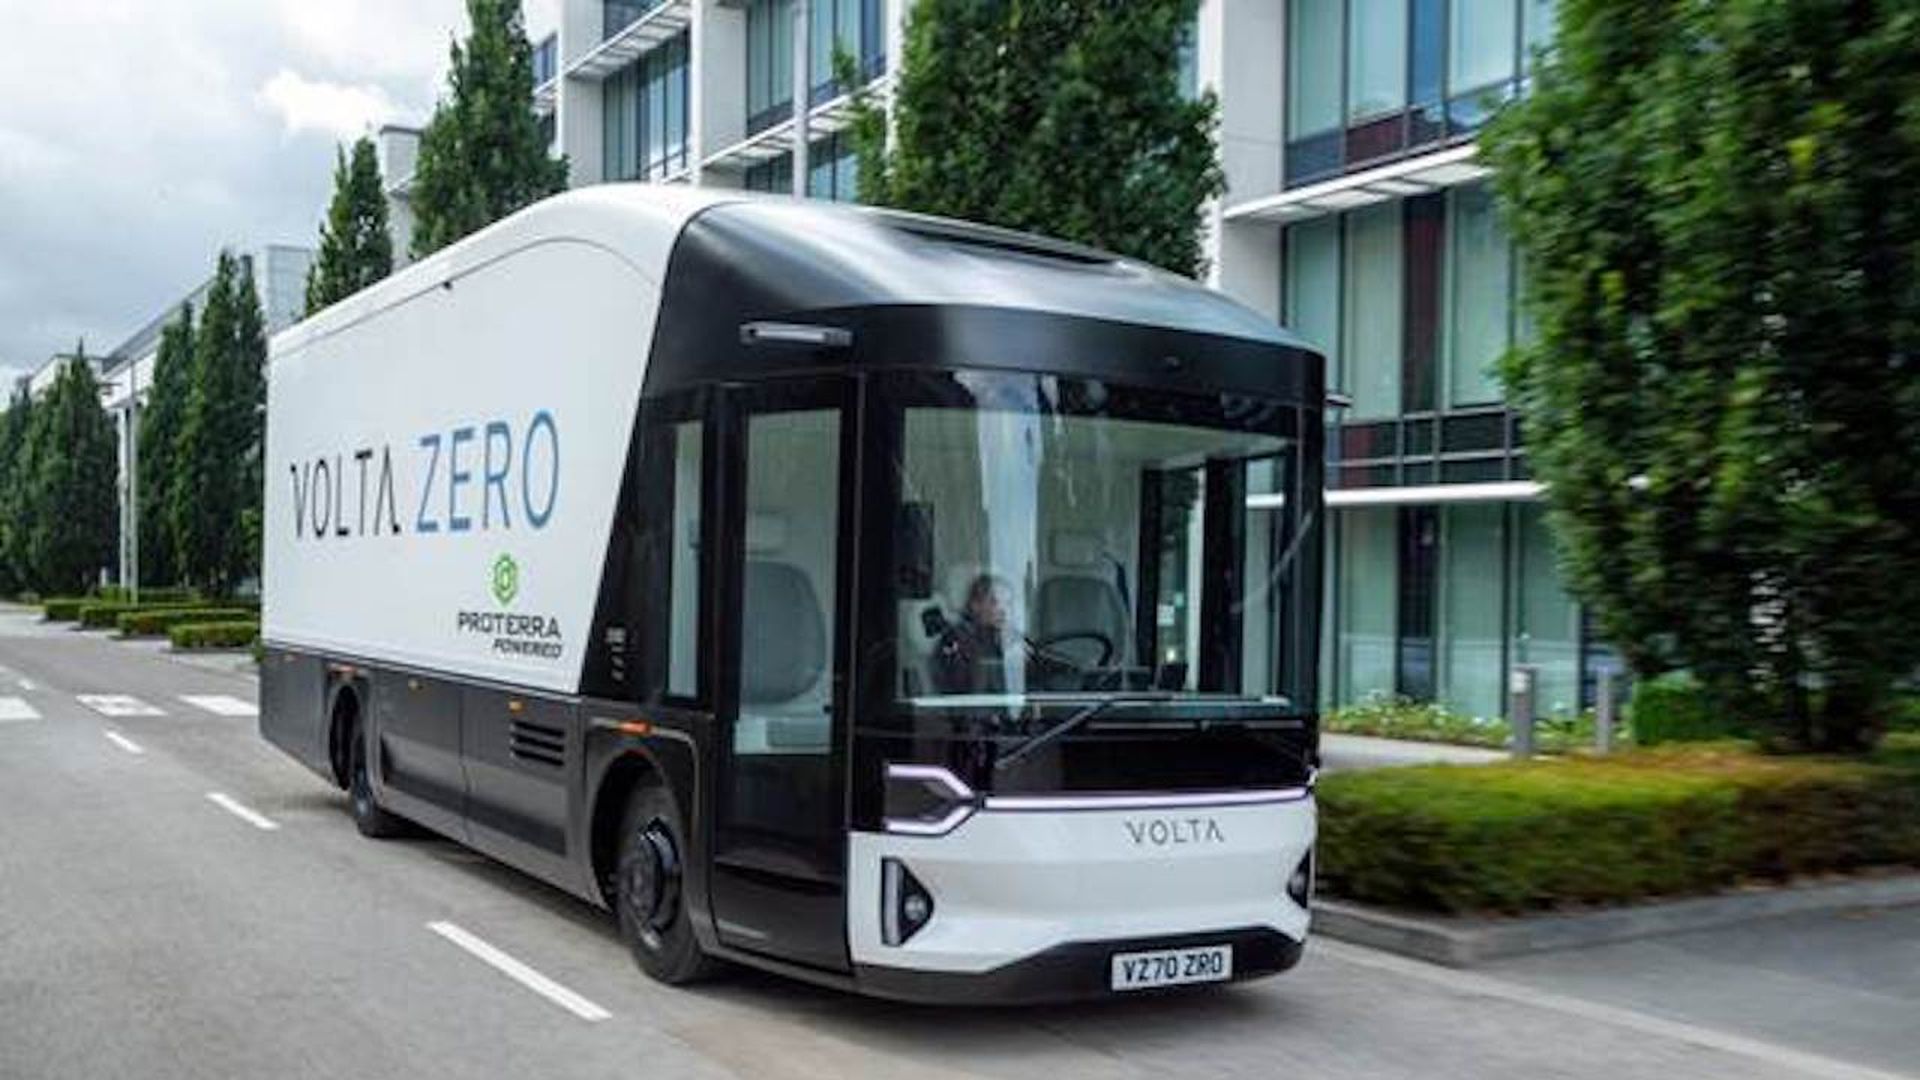 Photo of the Volta Zero urban freight vehicle.